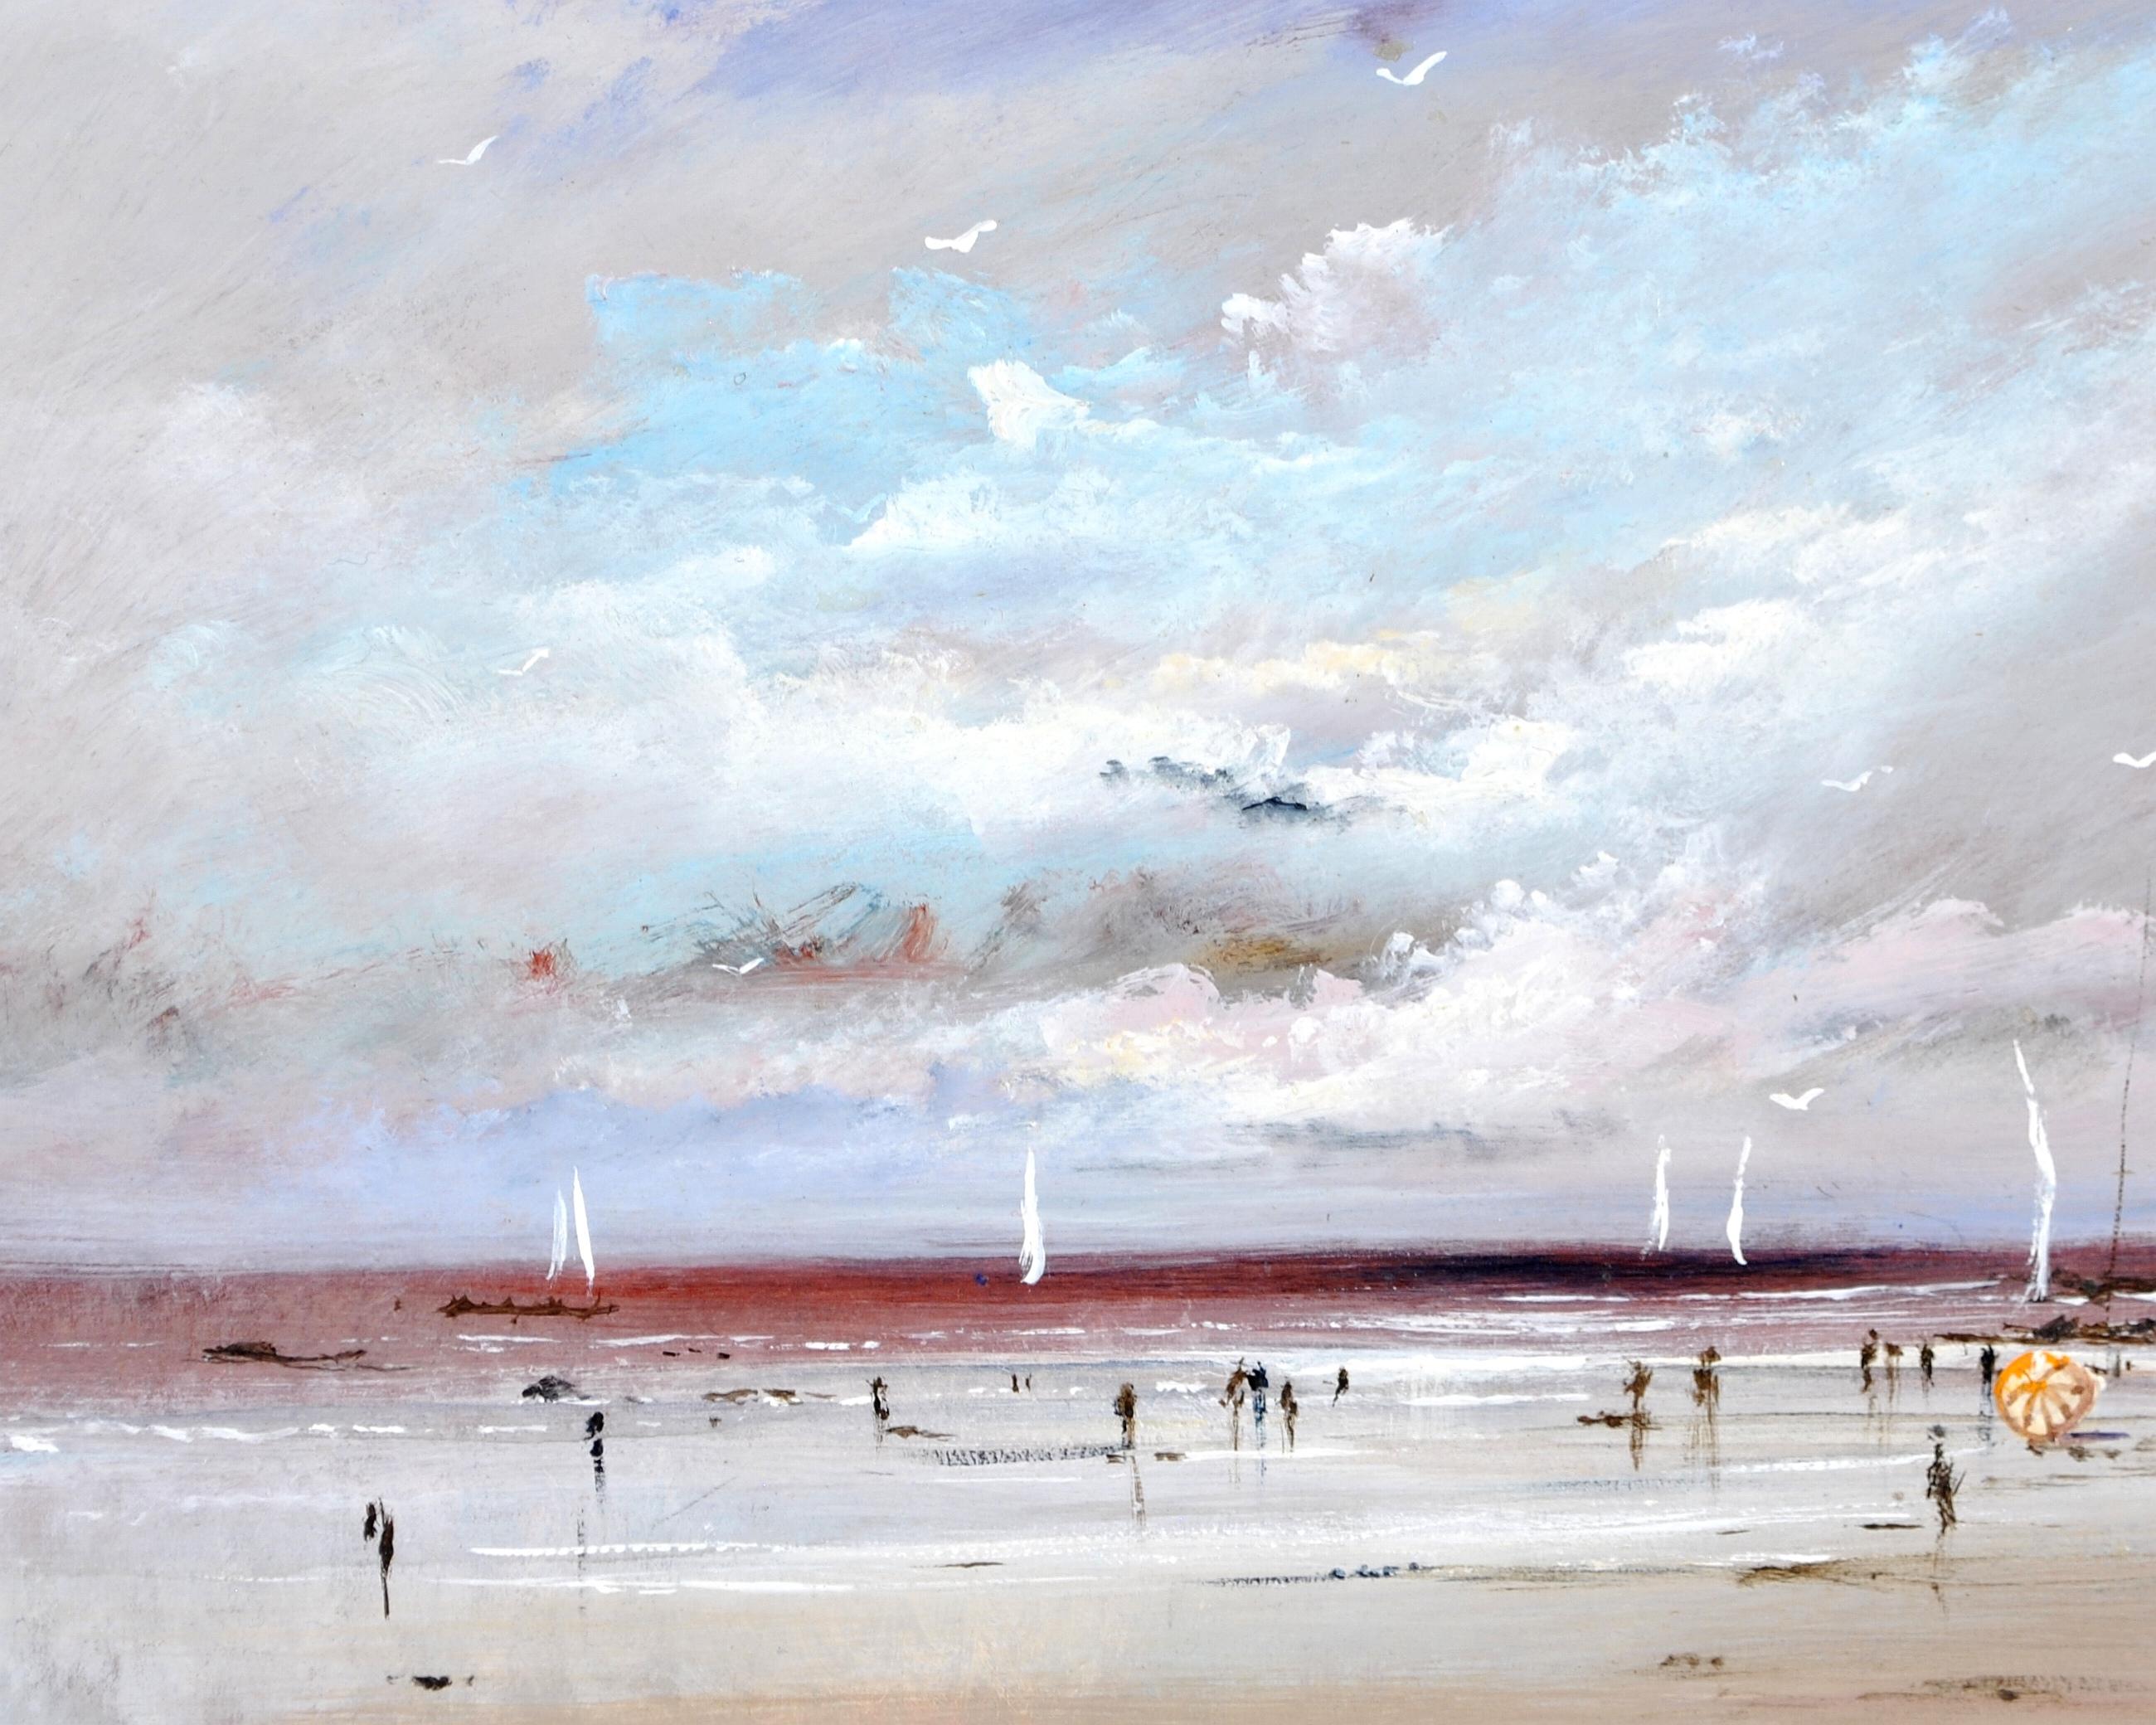 Magnifique huile impressionniste française sur carton des années 1950 représentant une scène côtière animée avec des personnages sur la plage et des voiliers sur la mer. 

L'œuvre est très bien peinte et atmosphérique avec un ciel merveilleusement